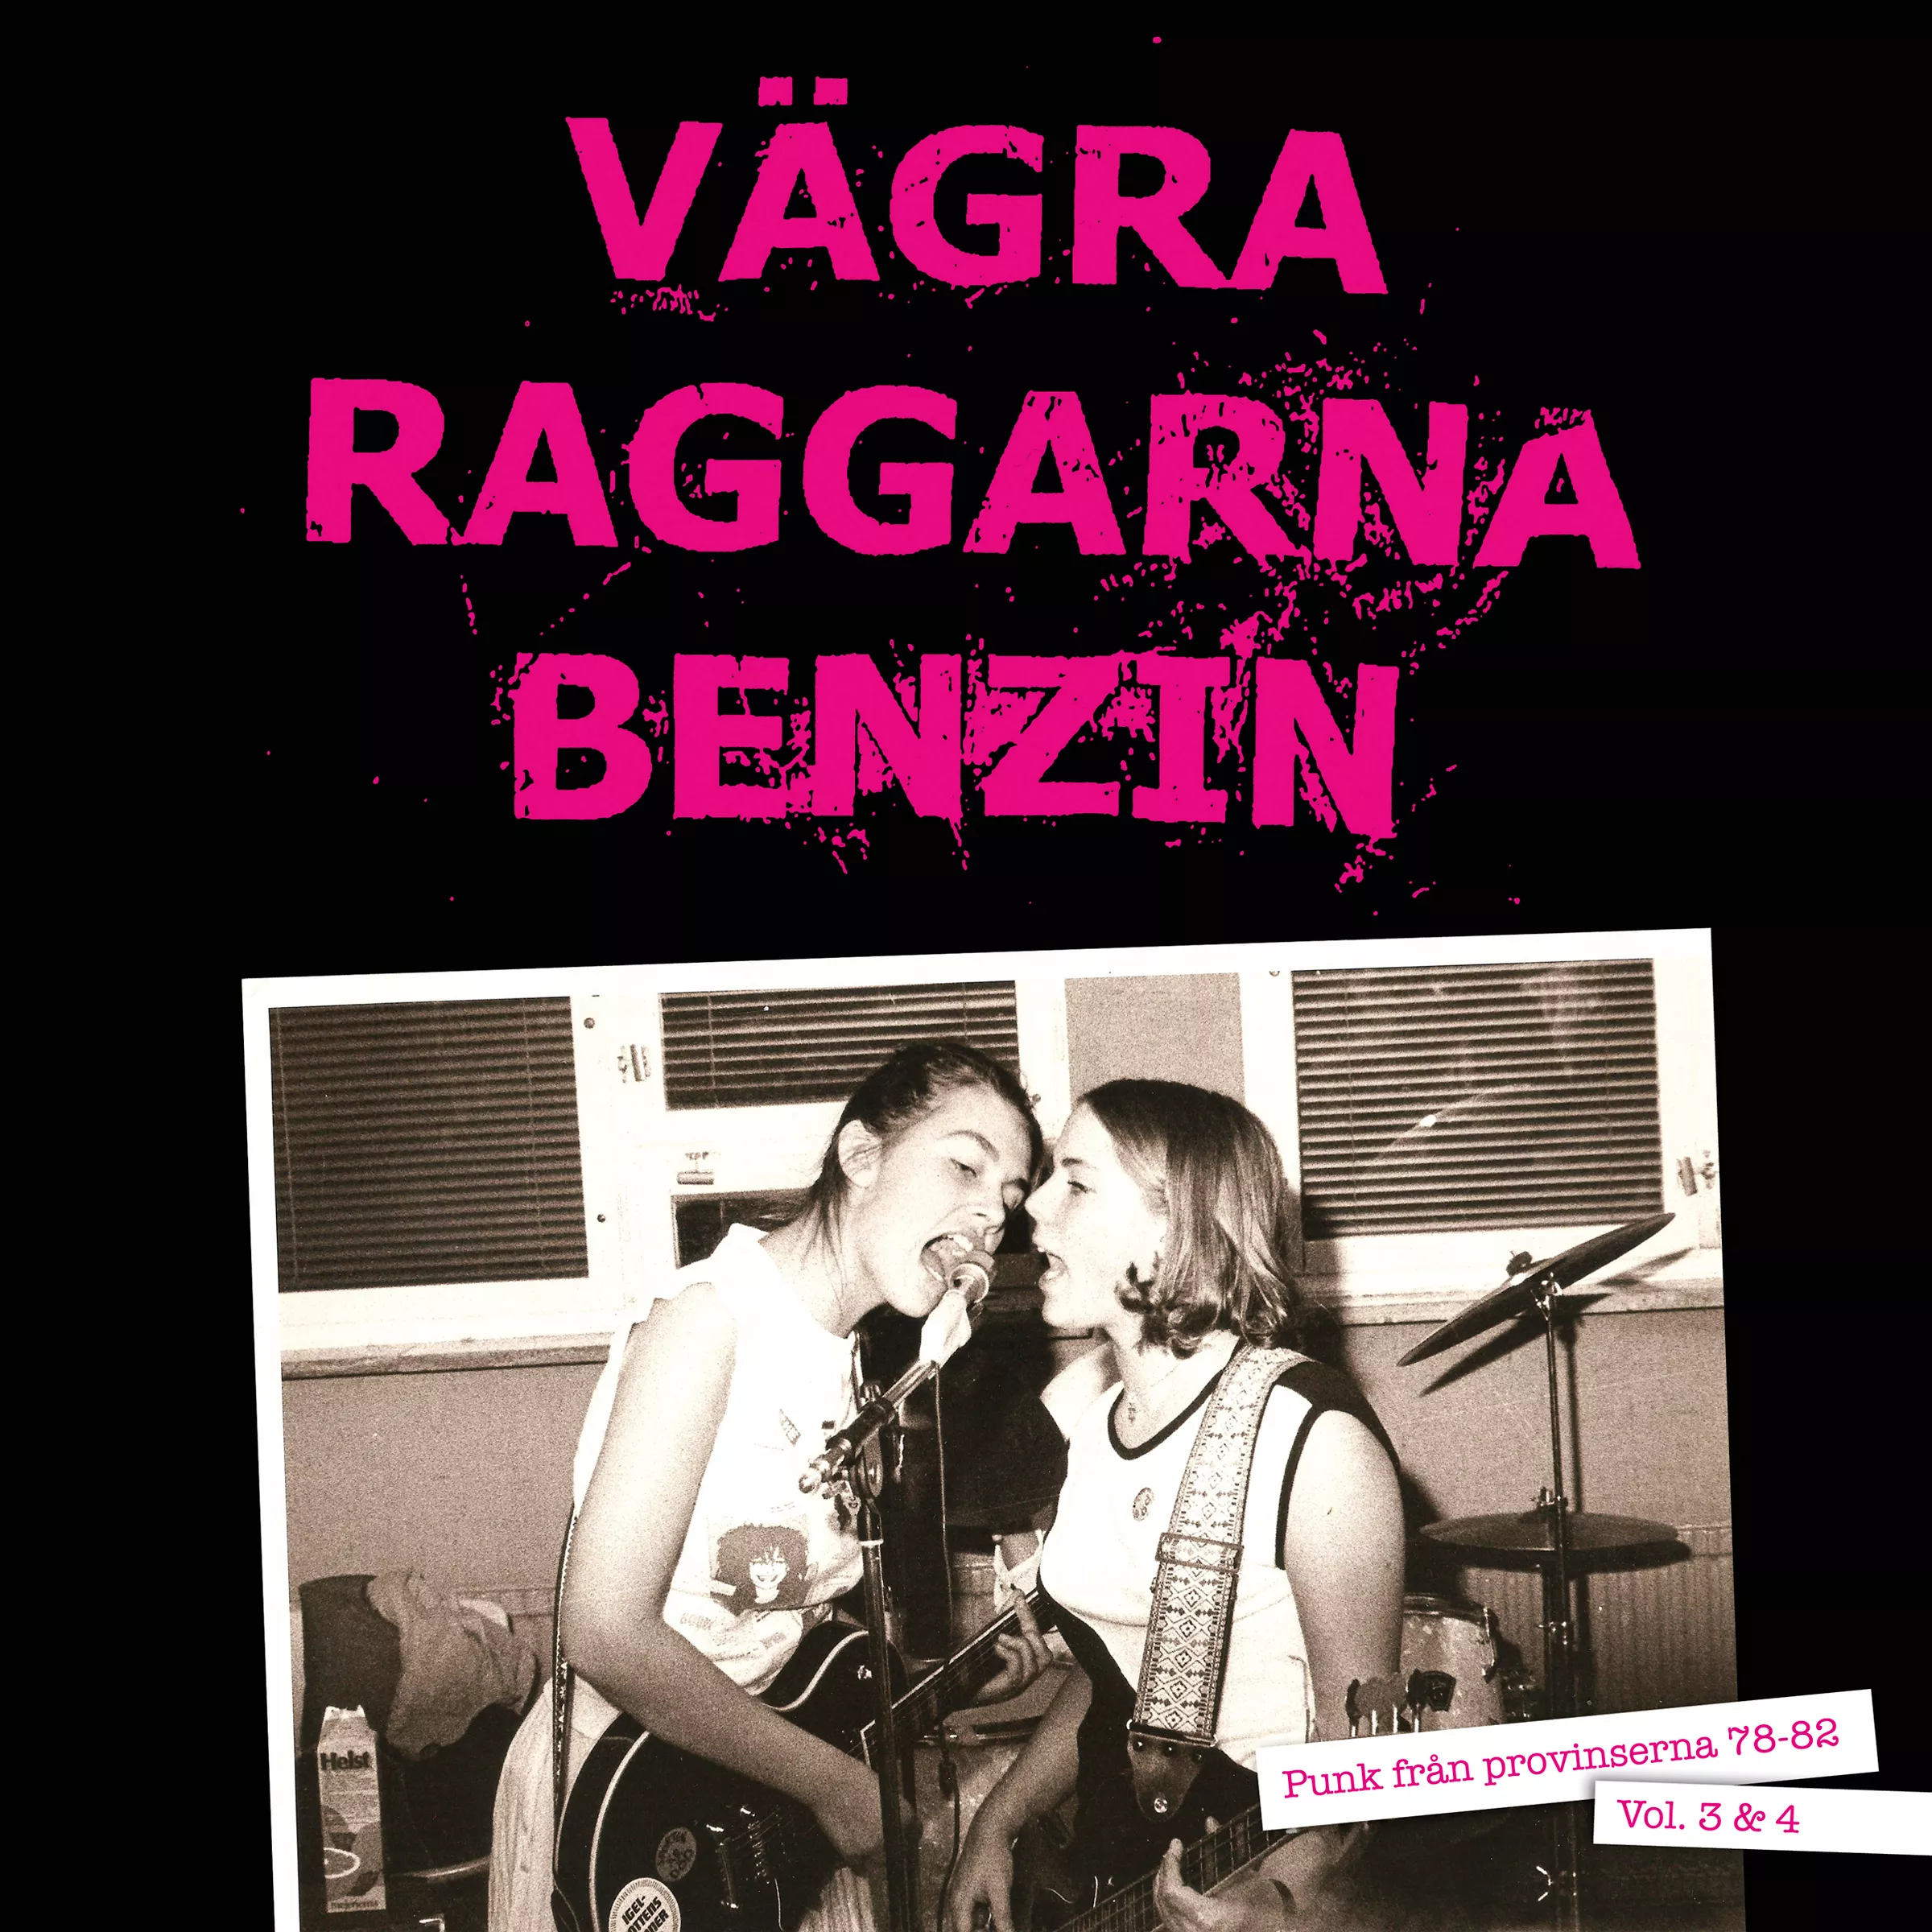 Vägra Raggarna Benzin - Punk Från Provinserna 78-82 Vol 3 & 4 - Diverse Artister